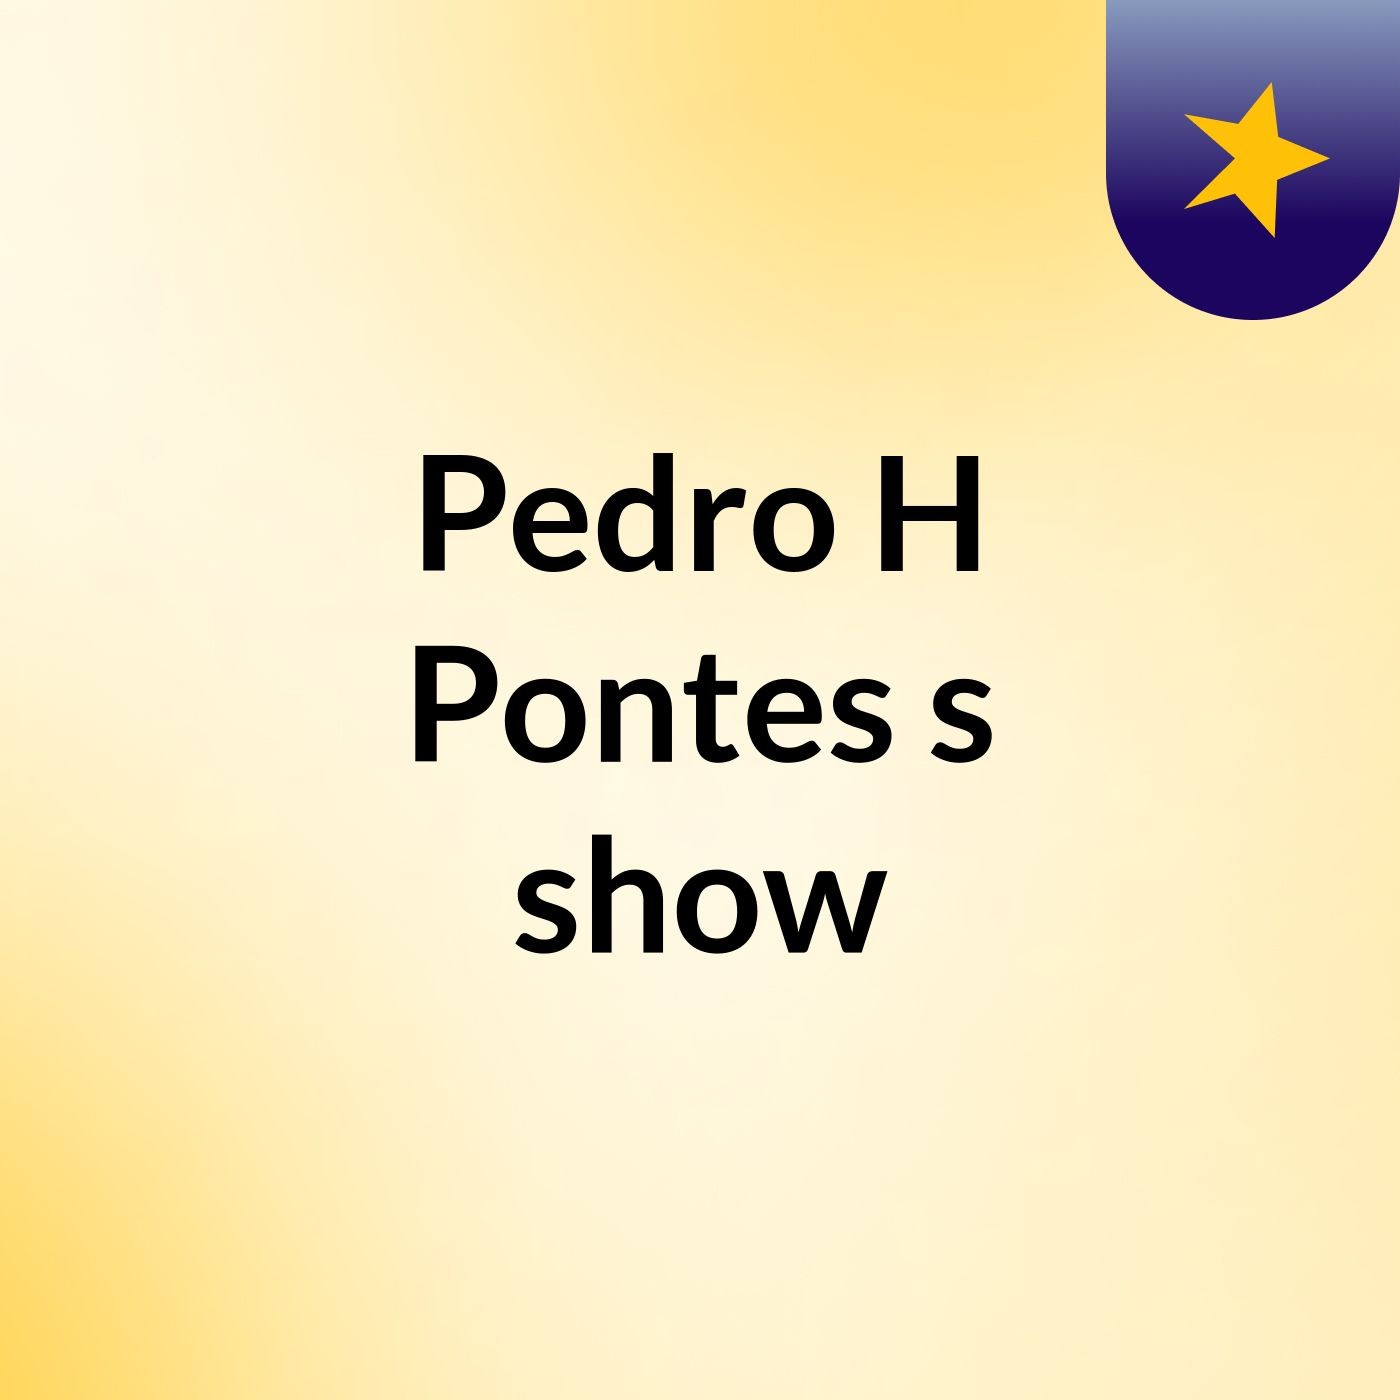 Pedro H Pontes's show